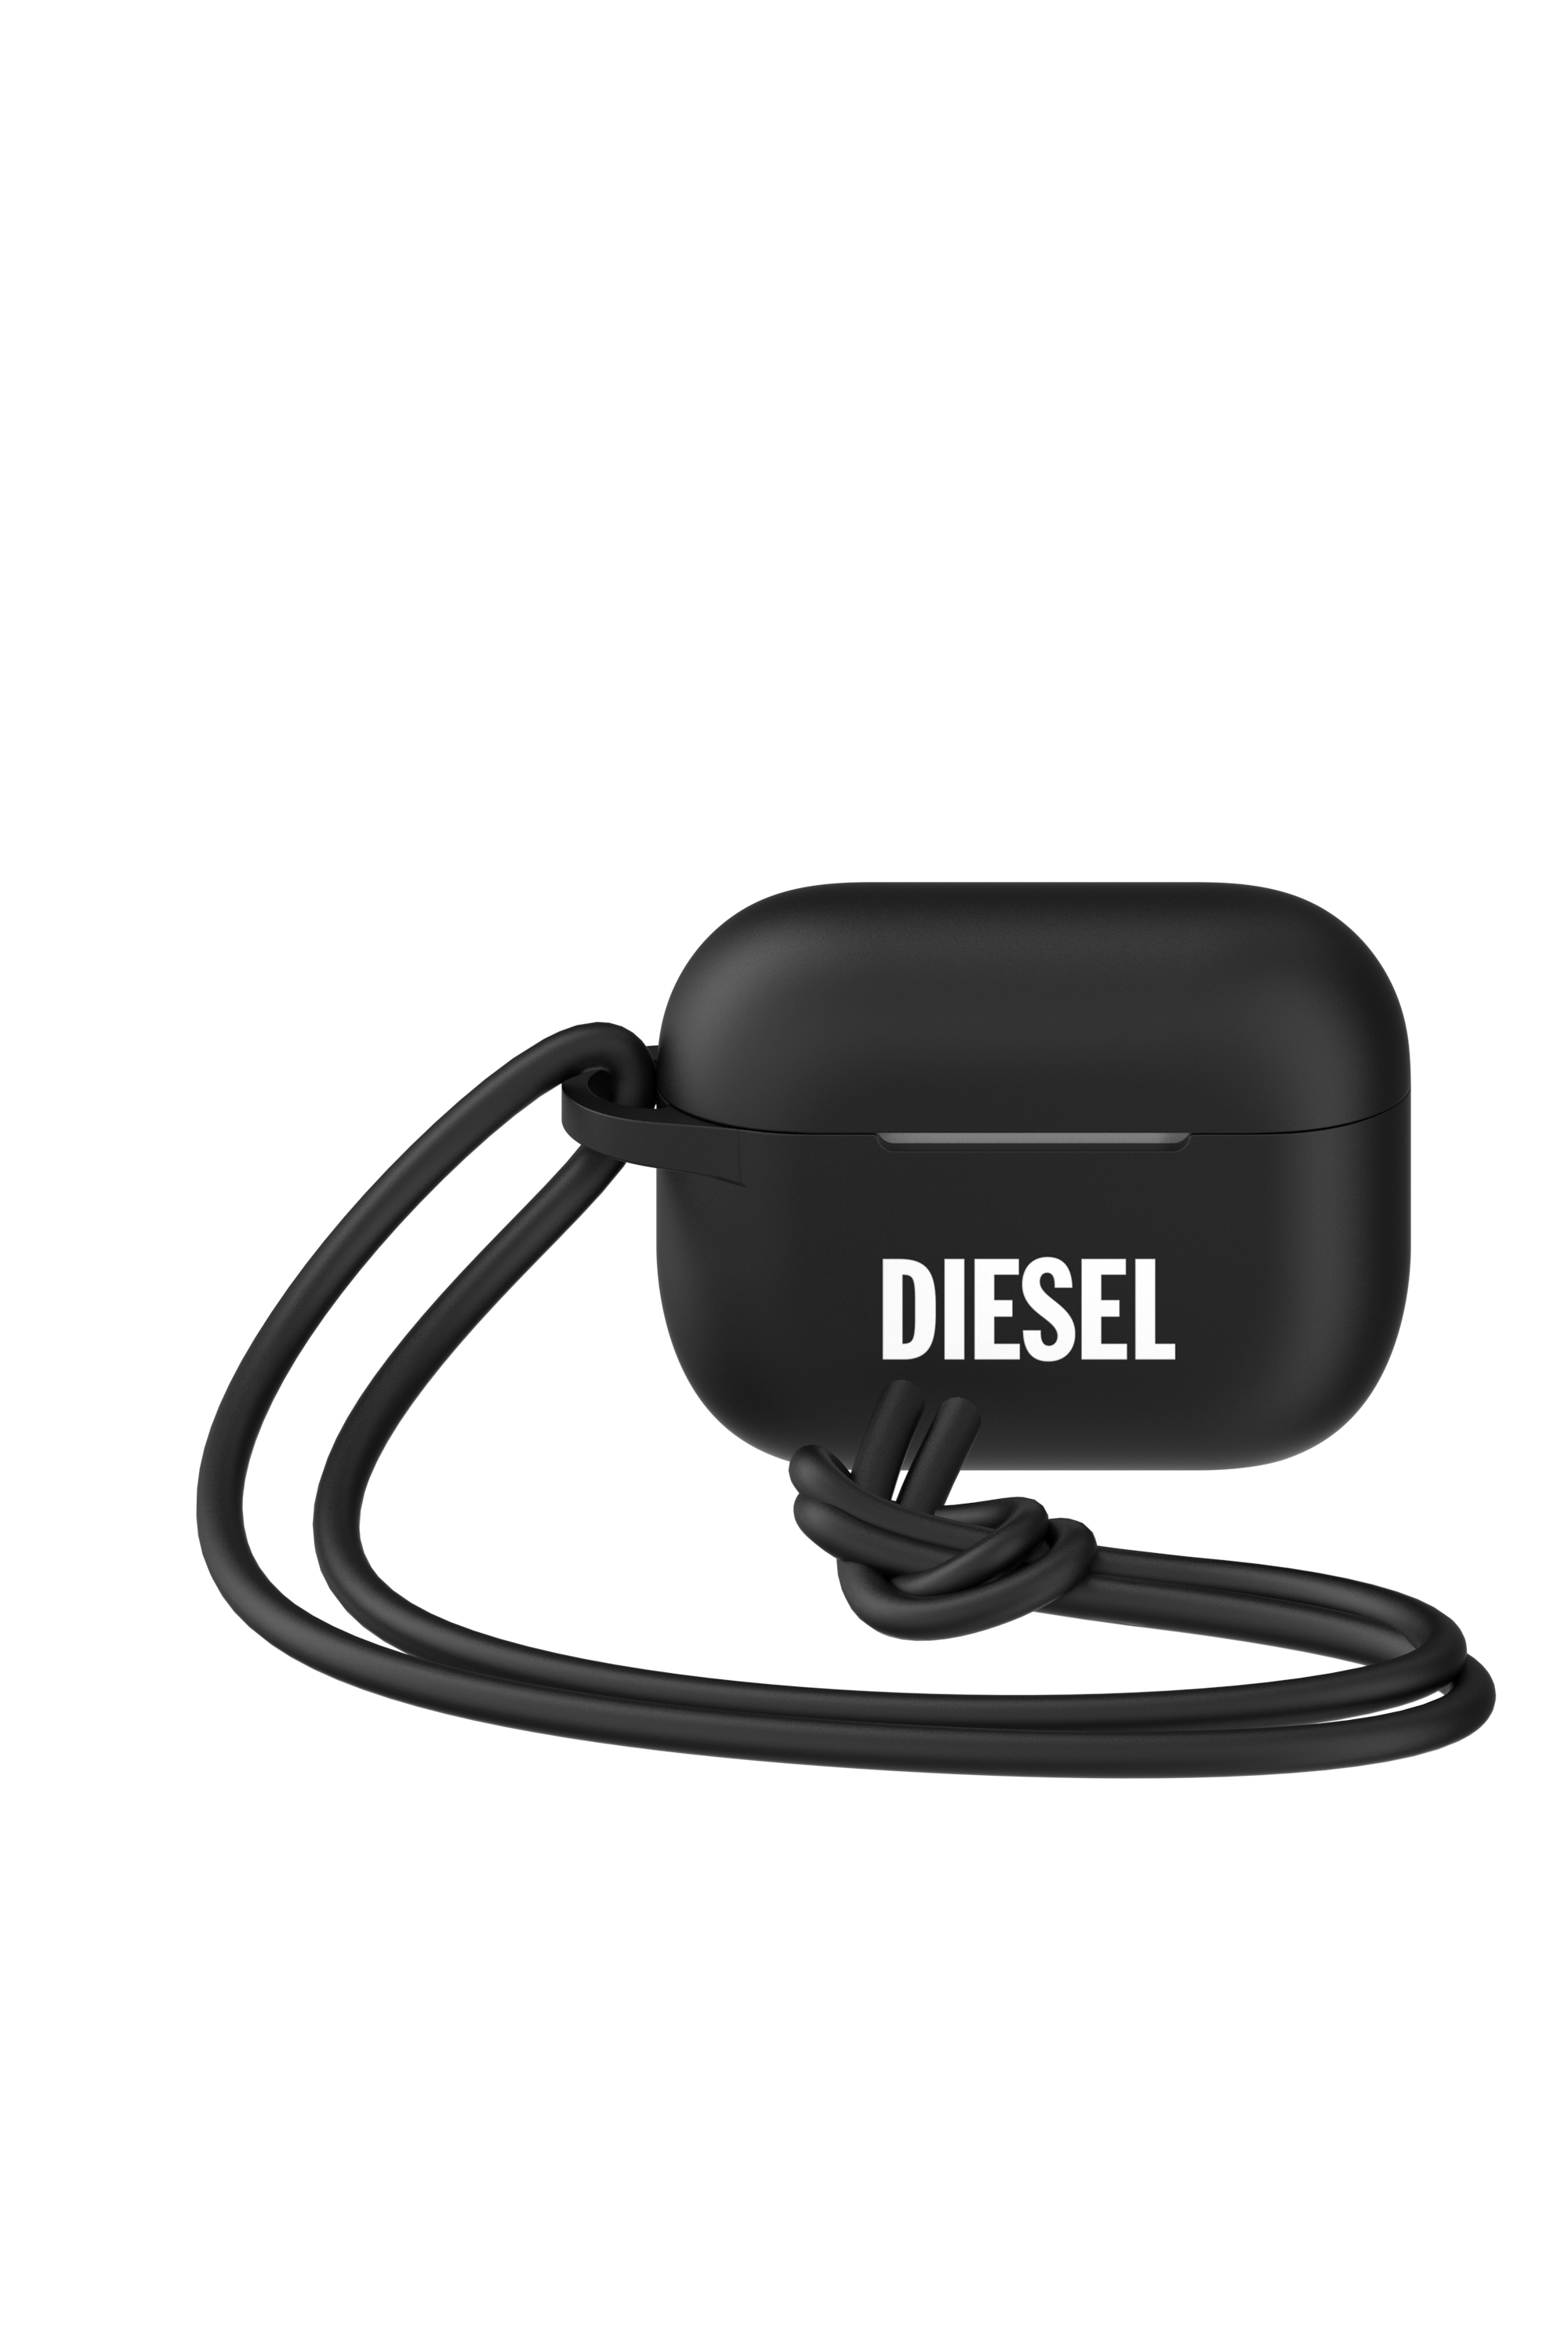 Diesel - 49863 AIRPOD CASE, Black - Image 5